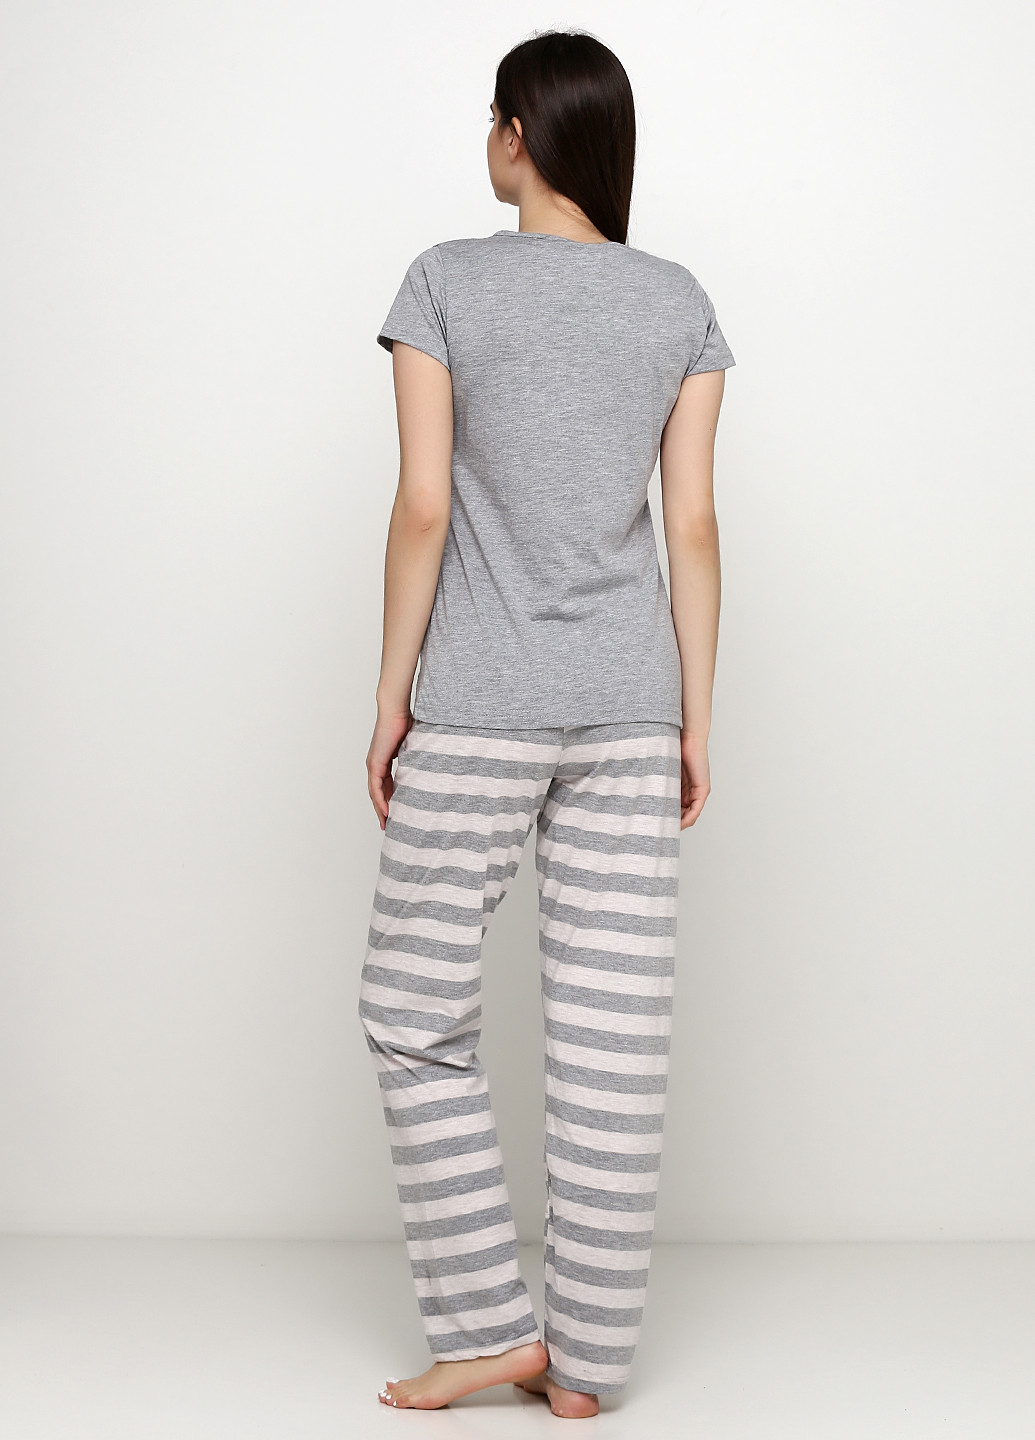 Серая всесезон пижама (футболка, брюки) футболка + брюки Sexen